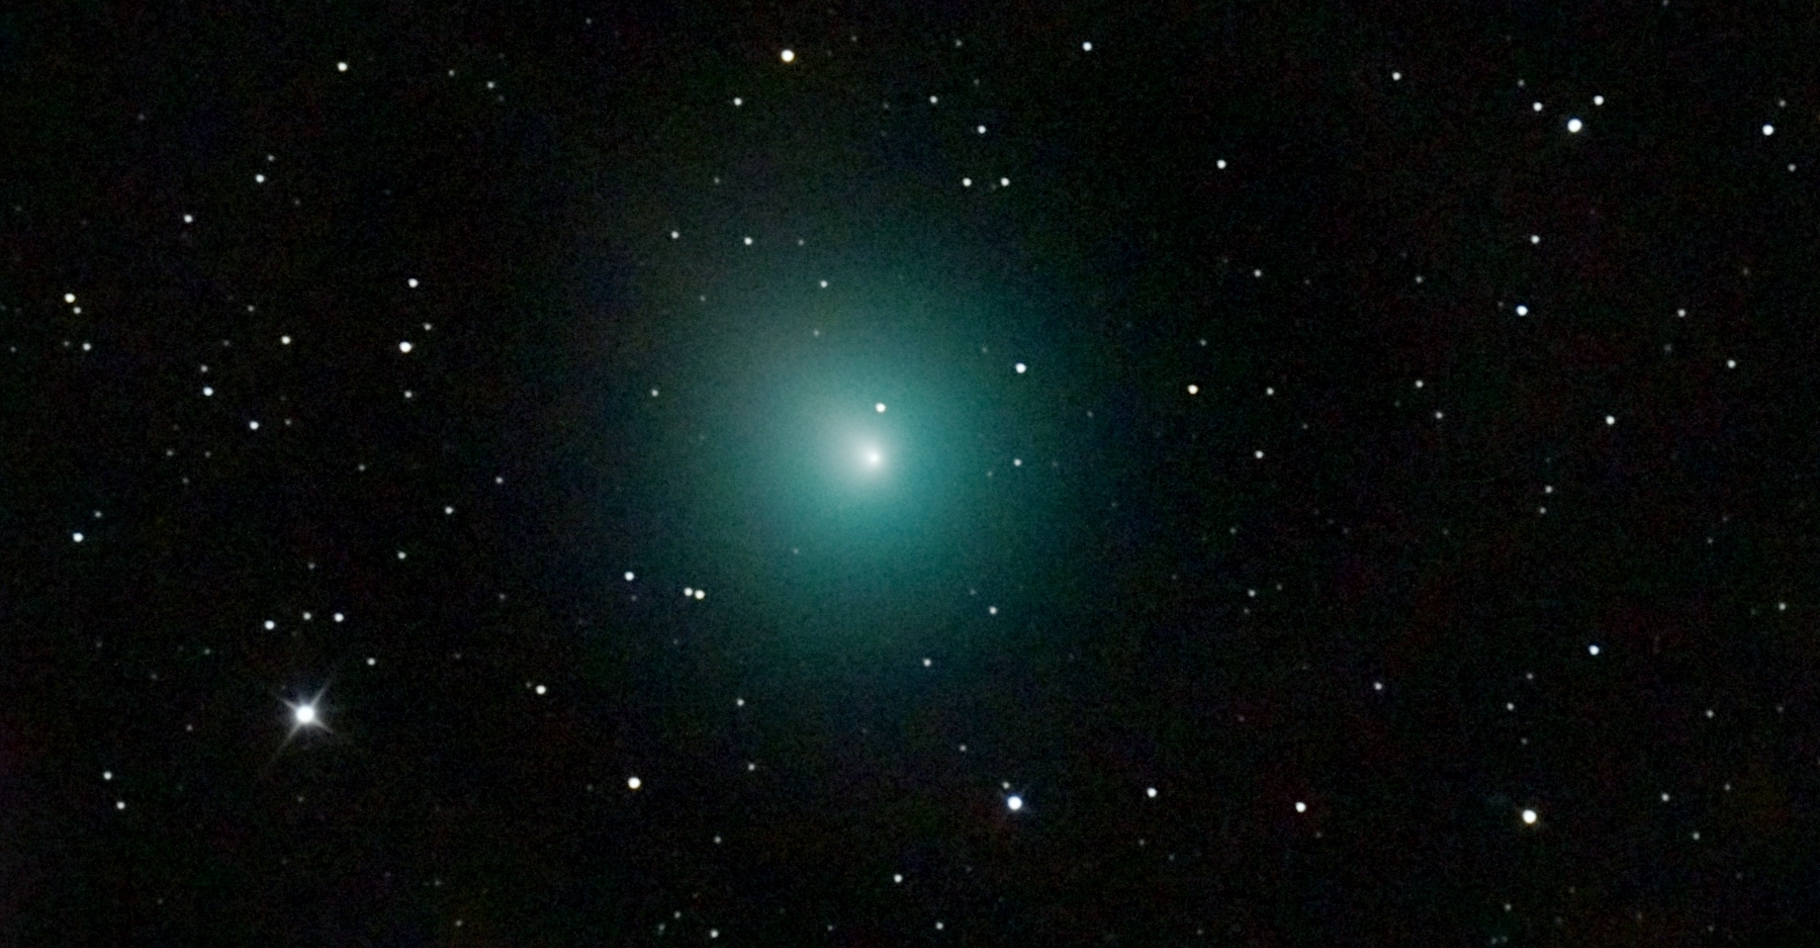 La comète 46P/Wirtanen est une petite comète dont la période orbitale est de 5,4 ans. Elle a été découverte en 1948 et fin 2018, elle a été secouée par une explosion qui a pu être observée dans le détail grâce au satellite de la Nasa Tess. © Nicolas Biver, Observatoire de Paris, PSL, Lesia